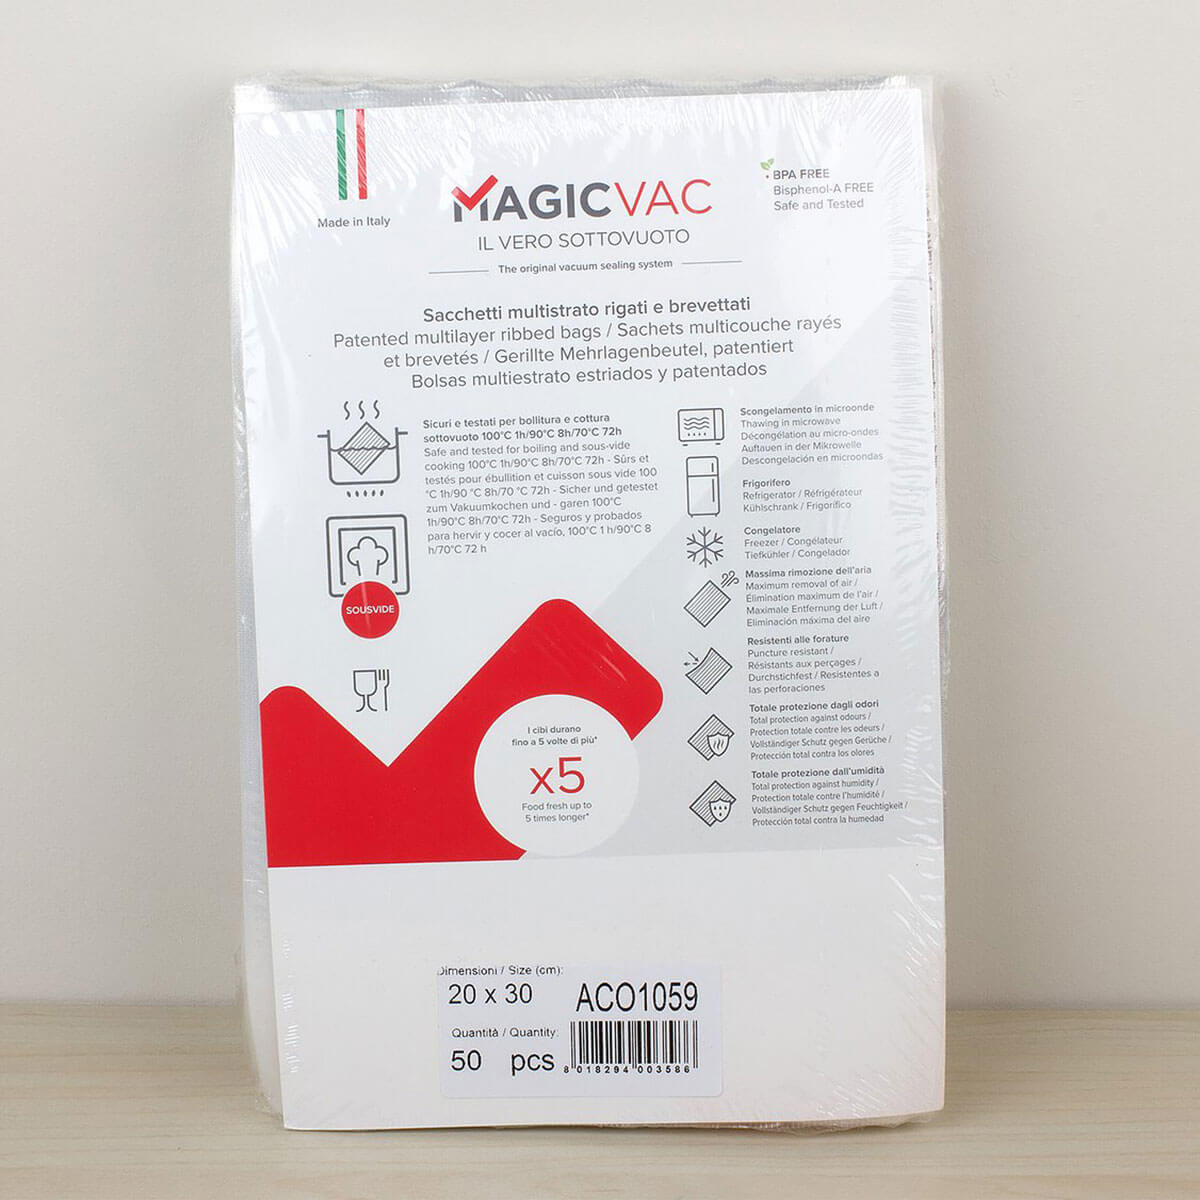 Magic Vac 20cm x 30cm vacuum packing bags.